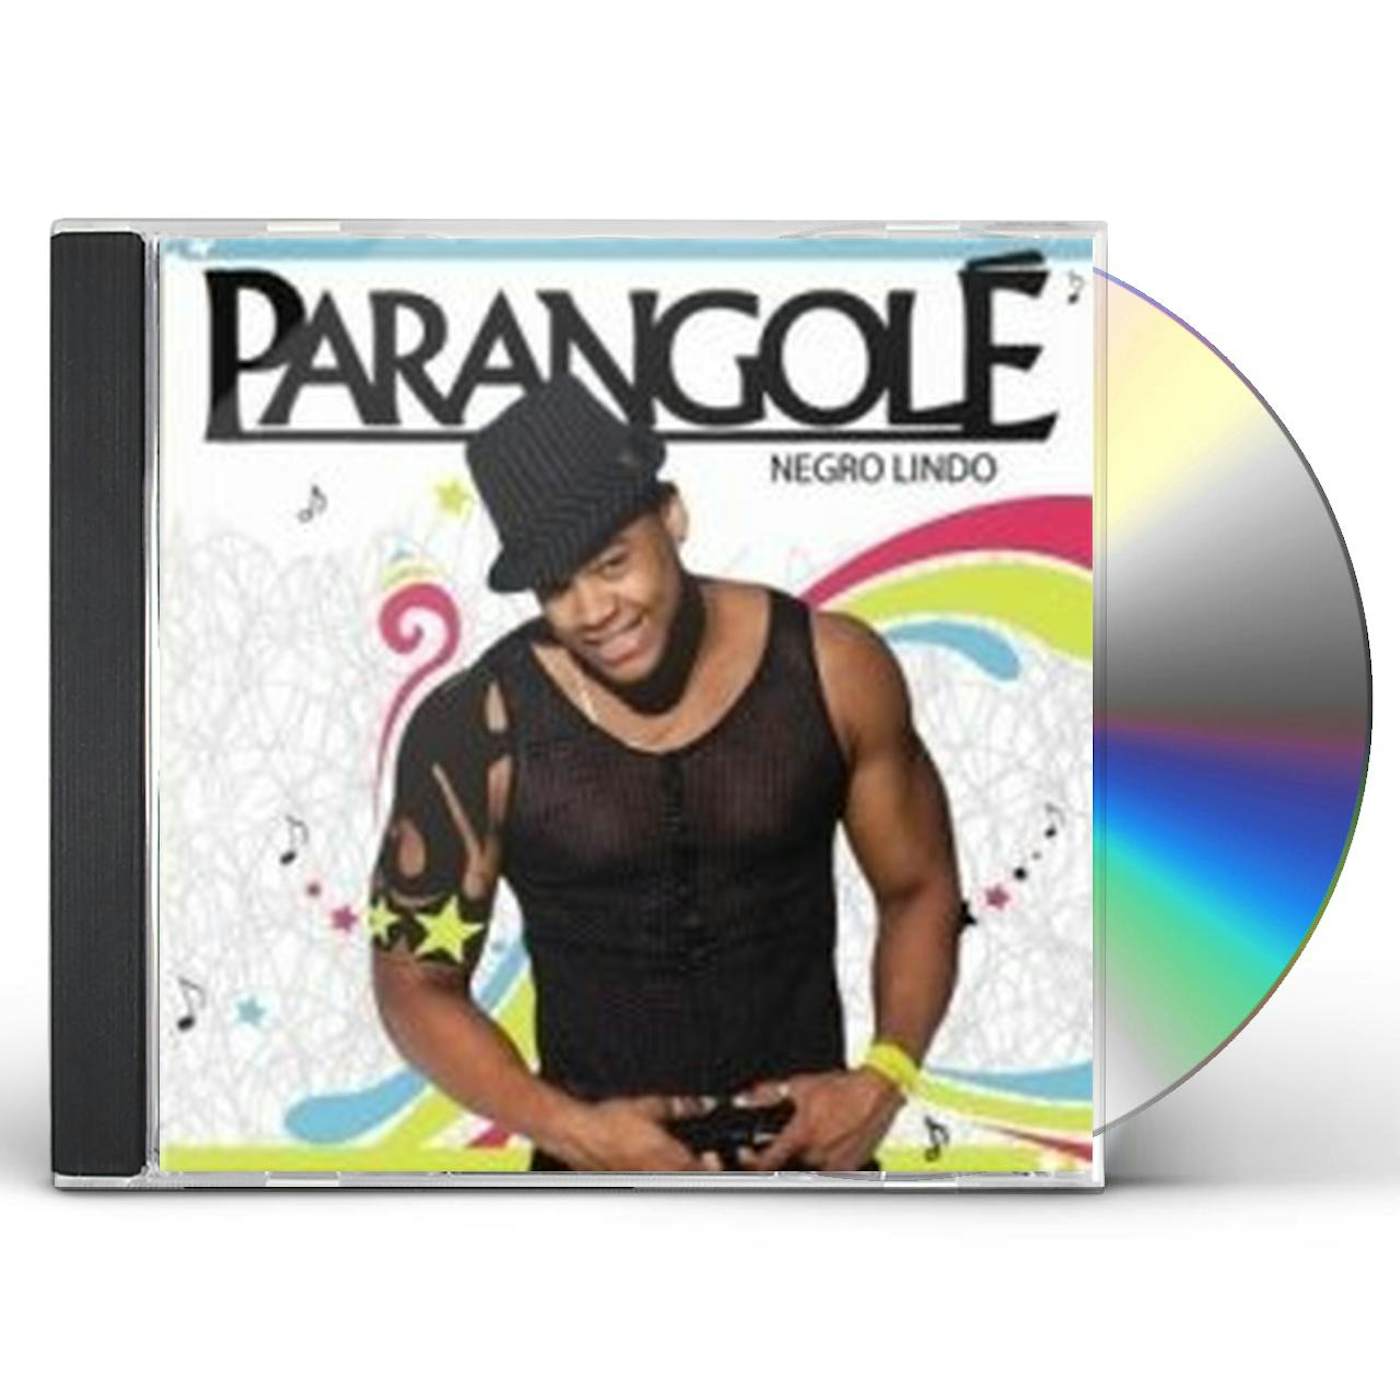 Parangolé NEGRO LINDO CD